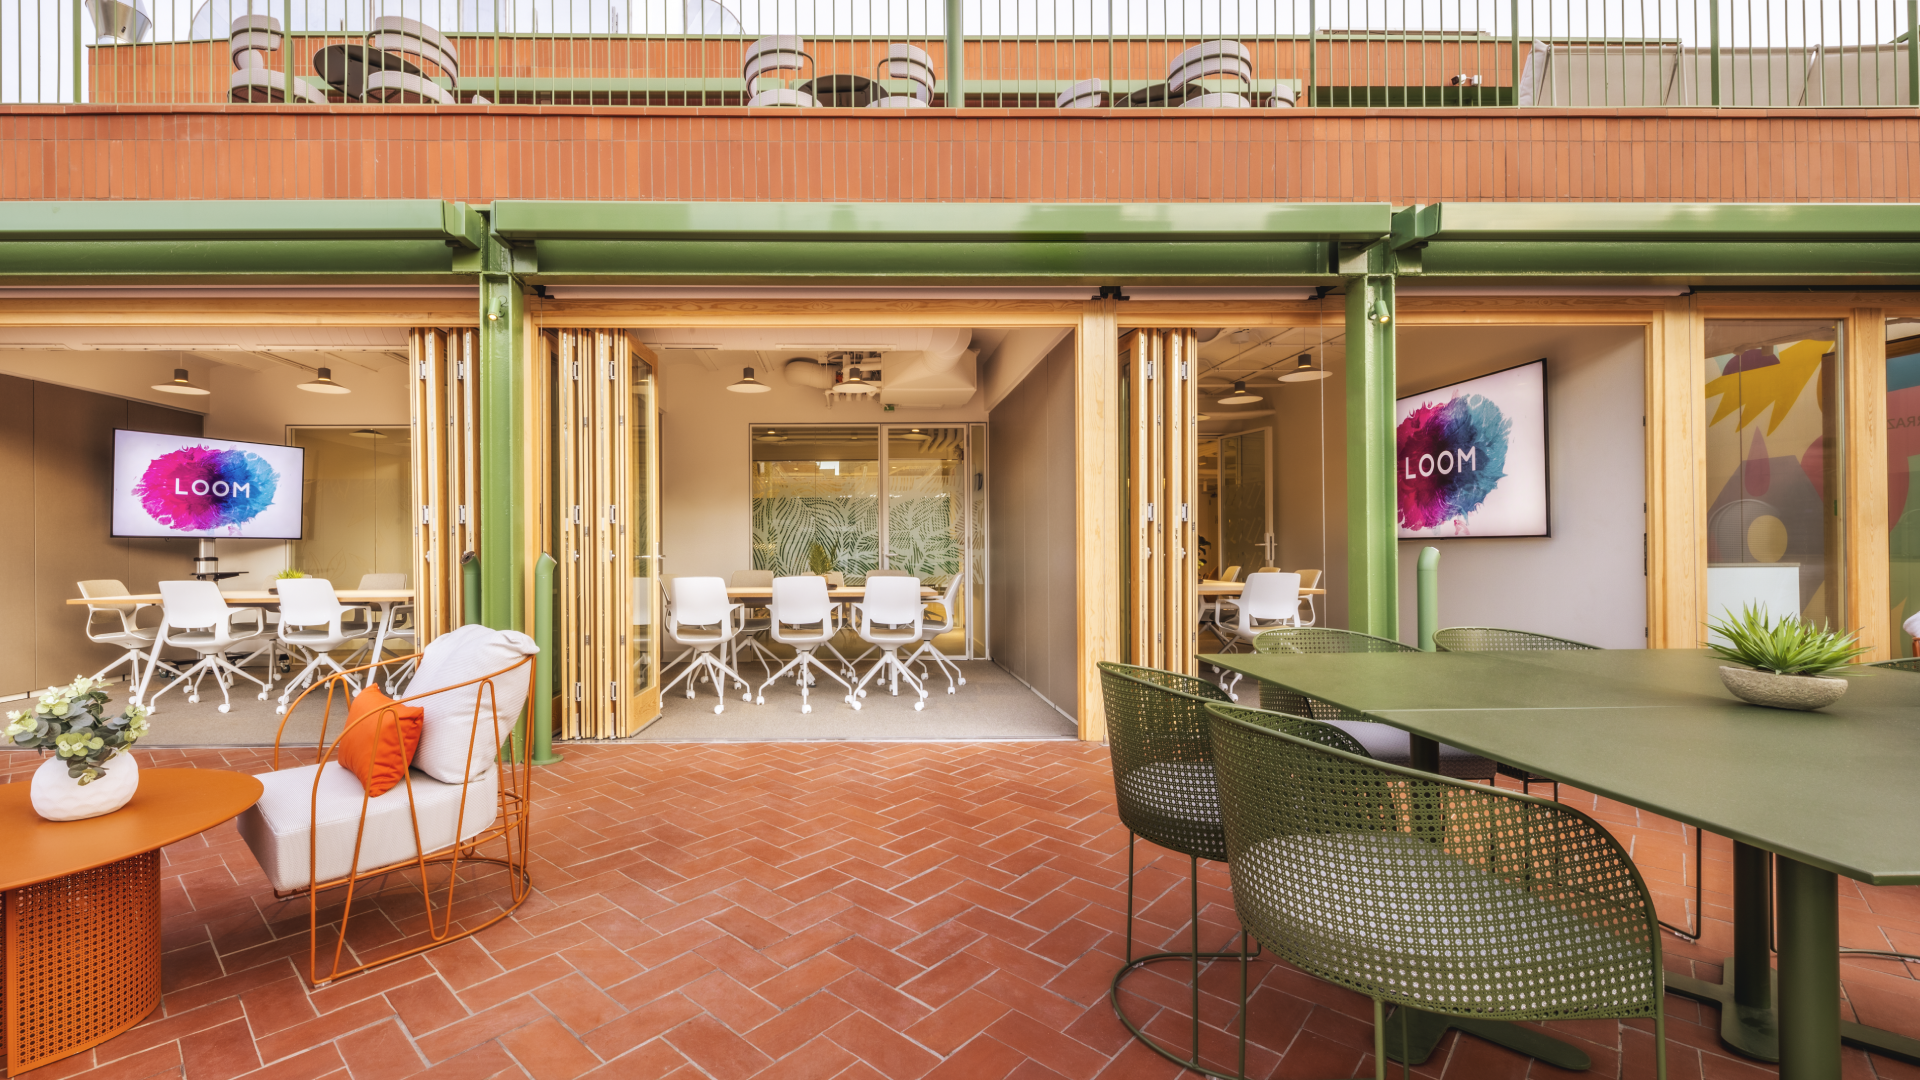 Loom ferretería cuenta con una terraza perfecta para Cócteles en Barcelona